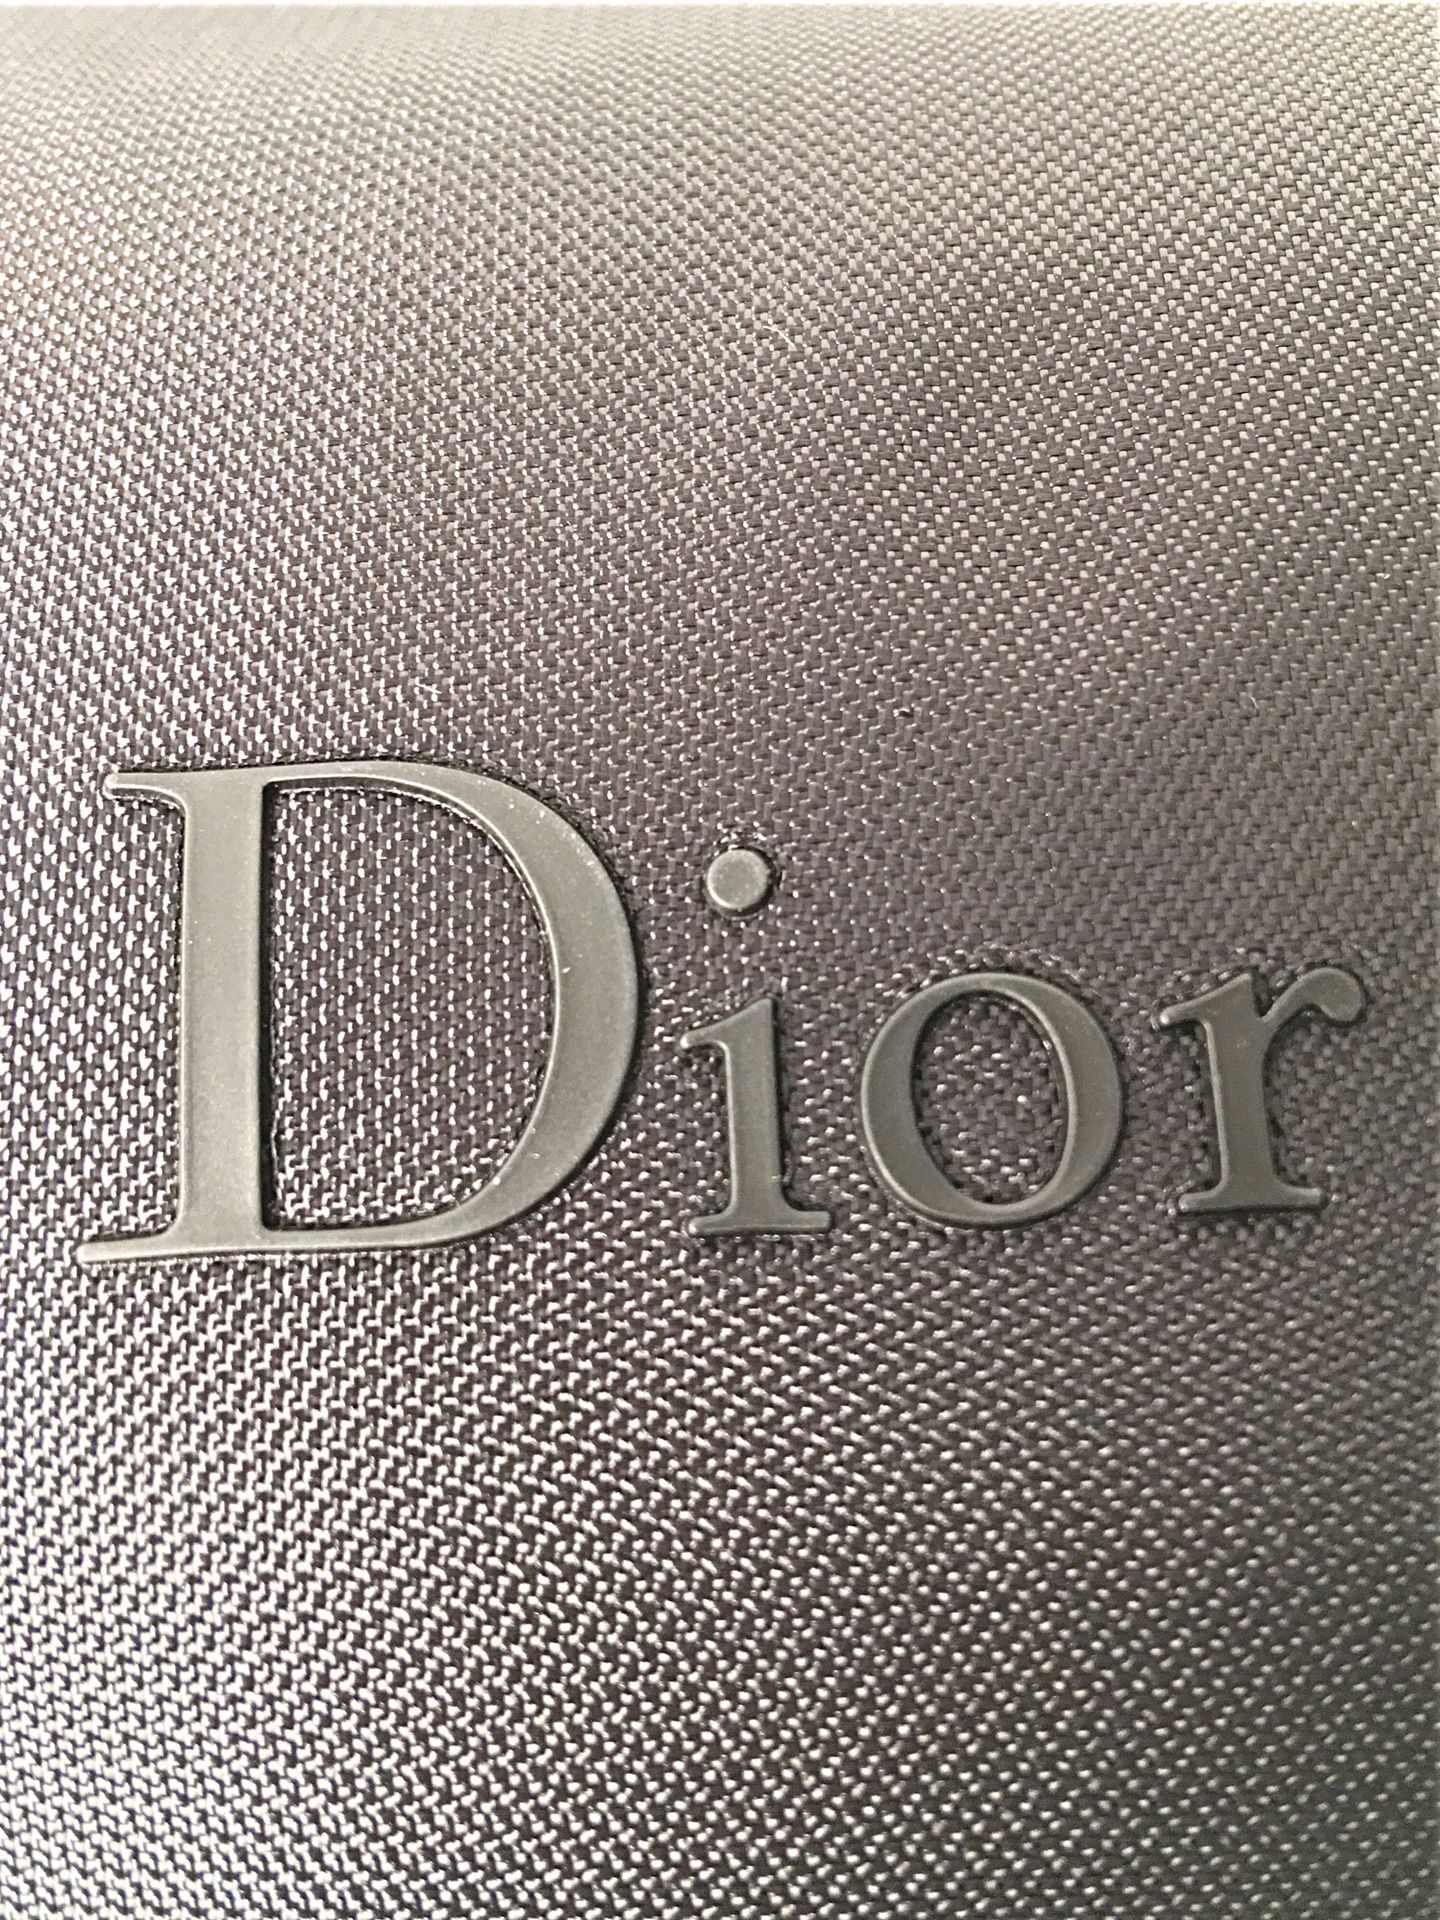 Le siège des parfums Christian Dior va s'installer à Neuilly - Le Parisien